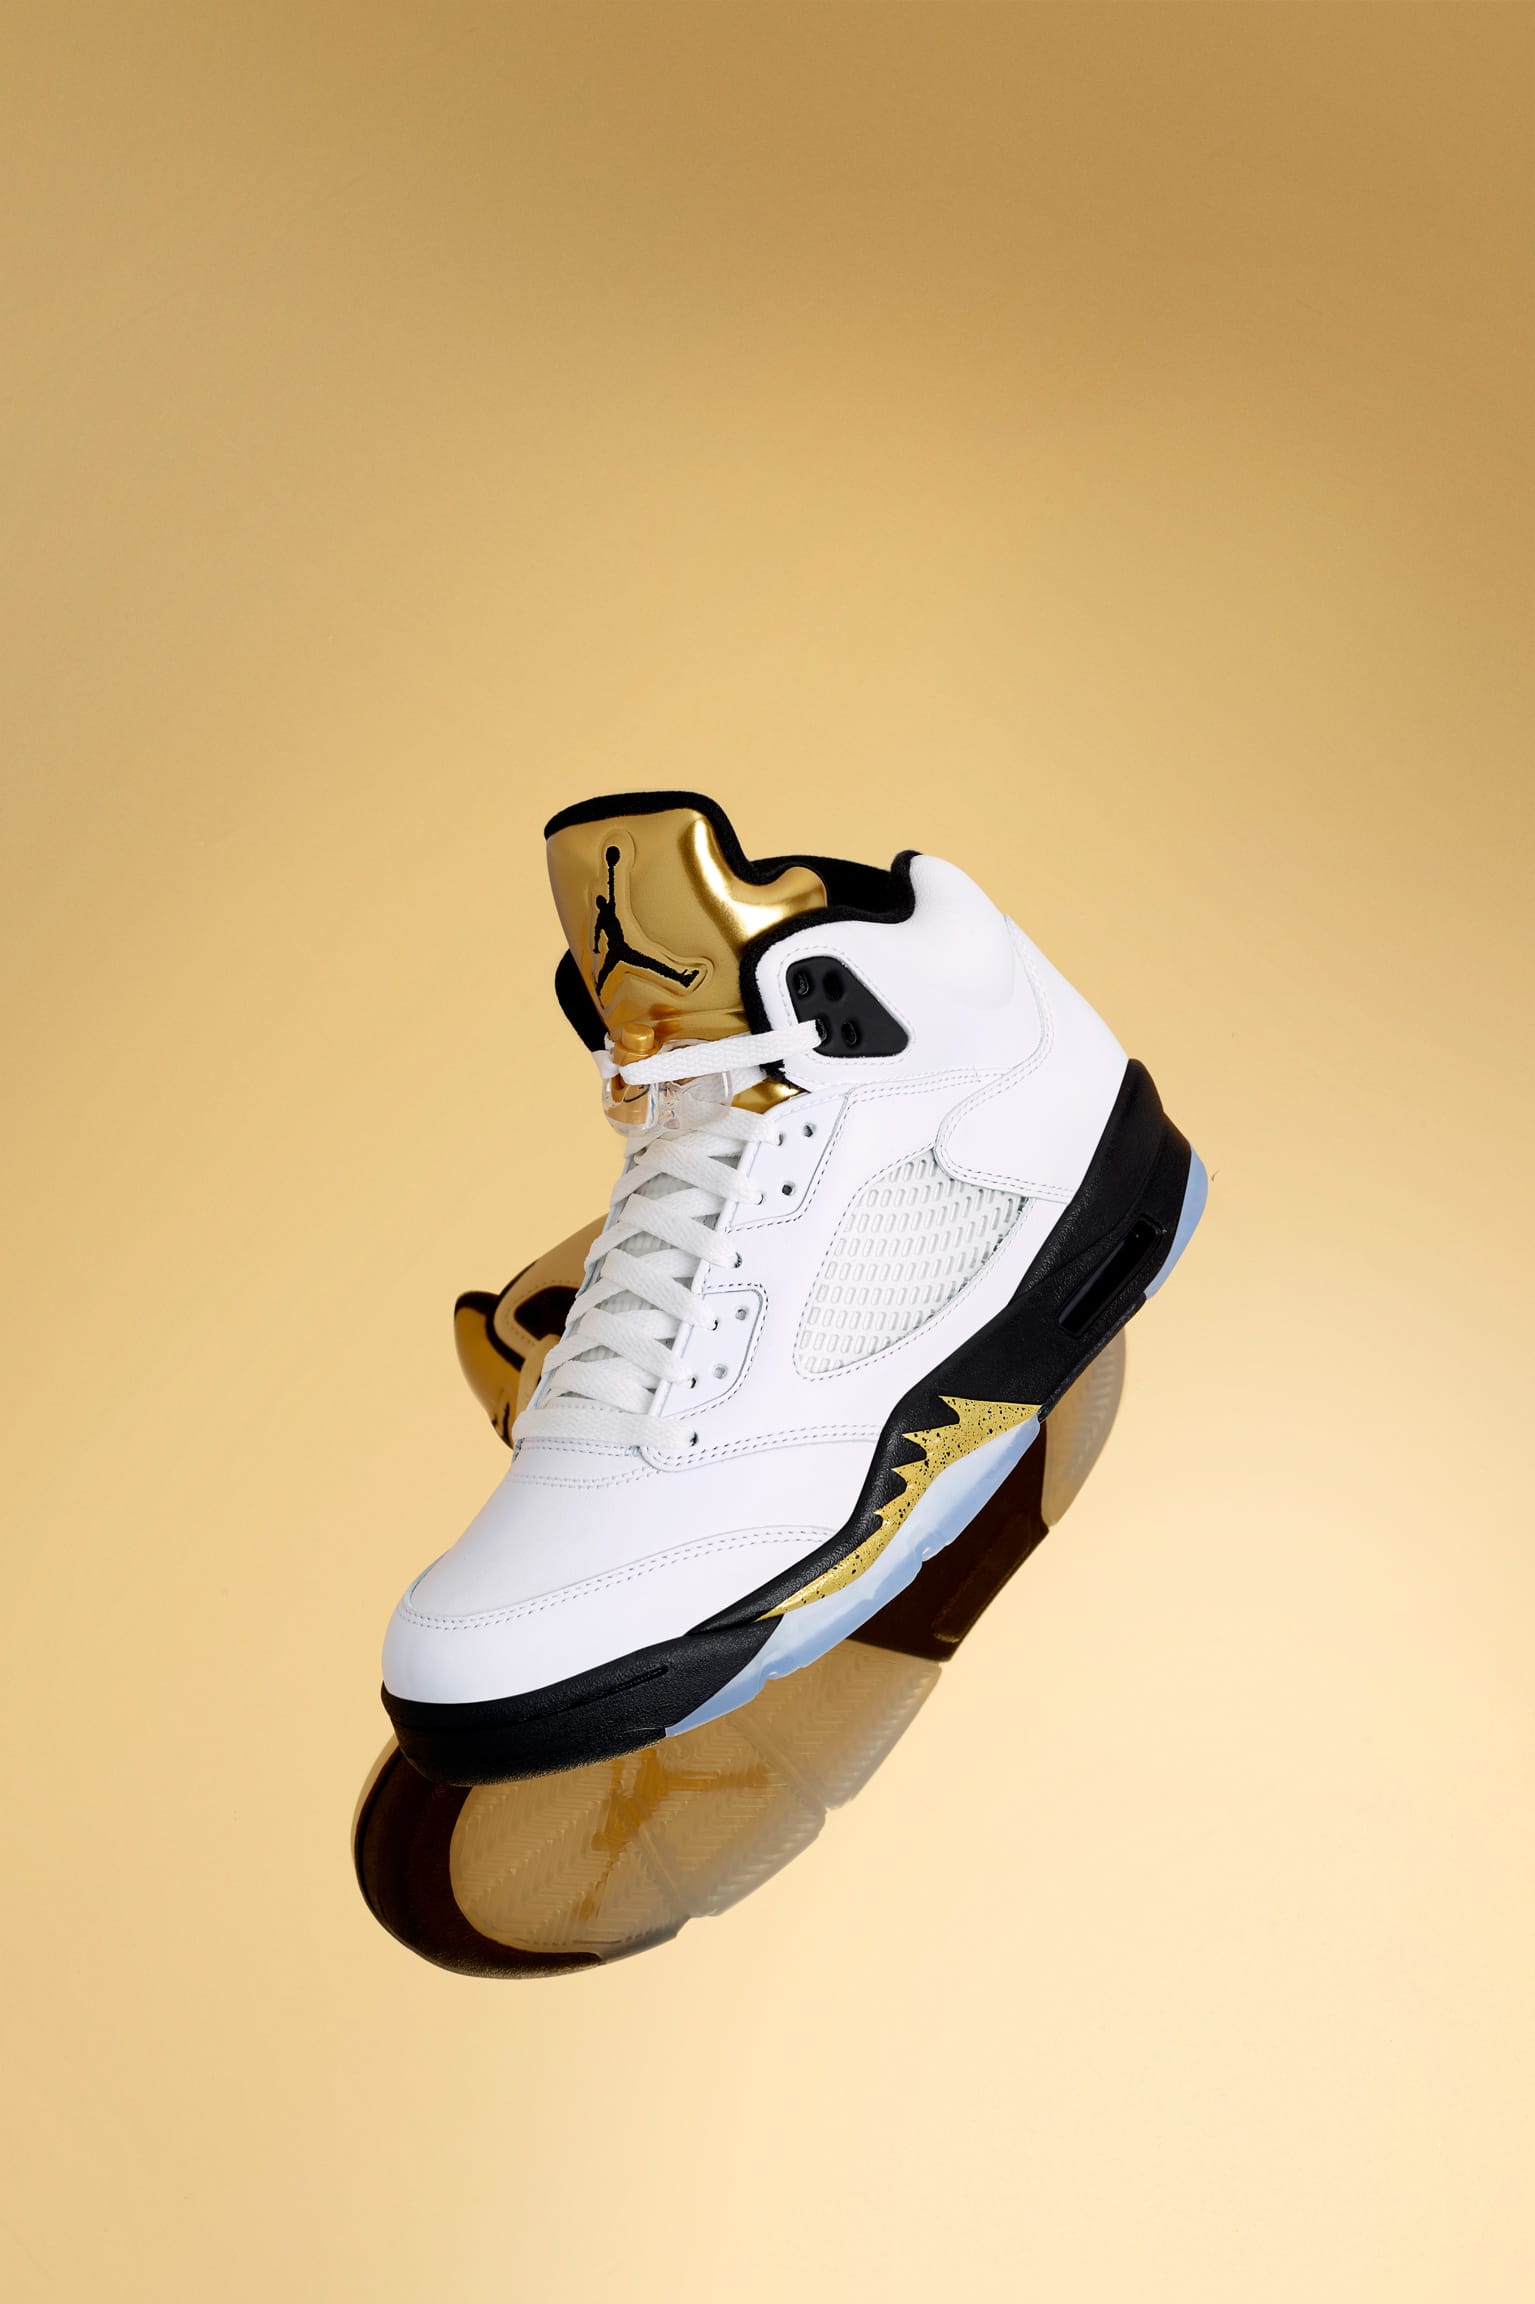 Air Jordan 5 Retro 'Metallic Gold' Release Date. Nike SNKRS